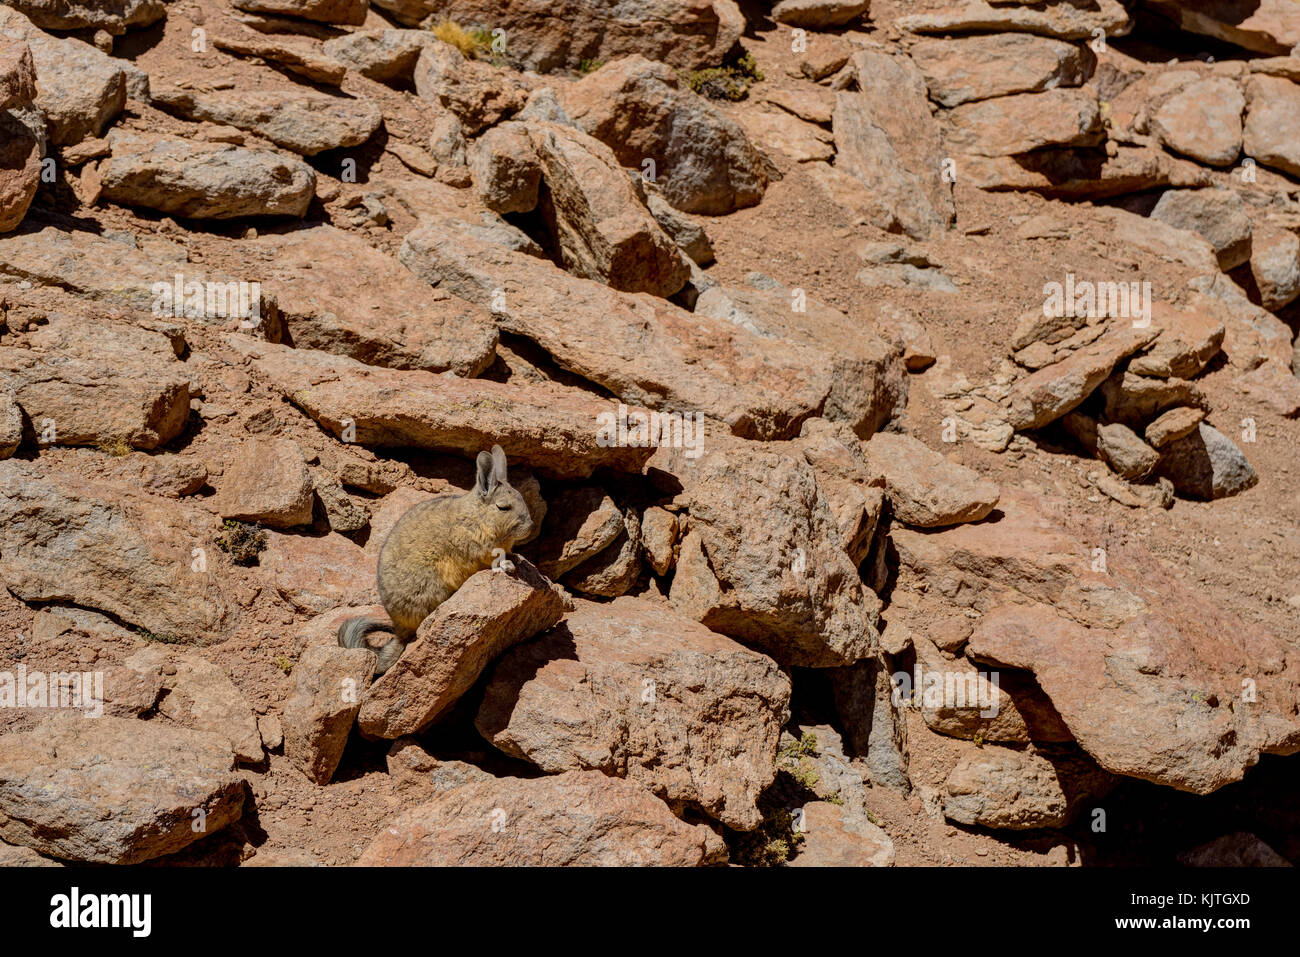 Photo taken in August 2017 in Altiplano Bolivia, South America: Chilean chinchilla Rabbit in Stones Altiplano Bolivia Stock Photo